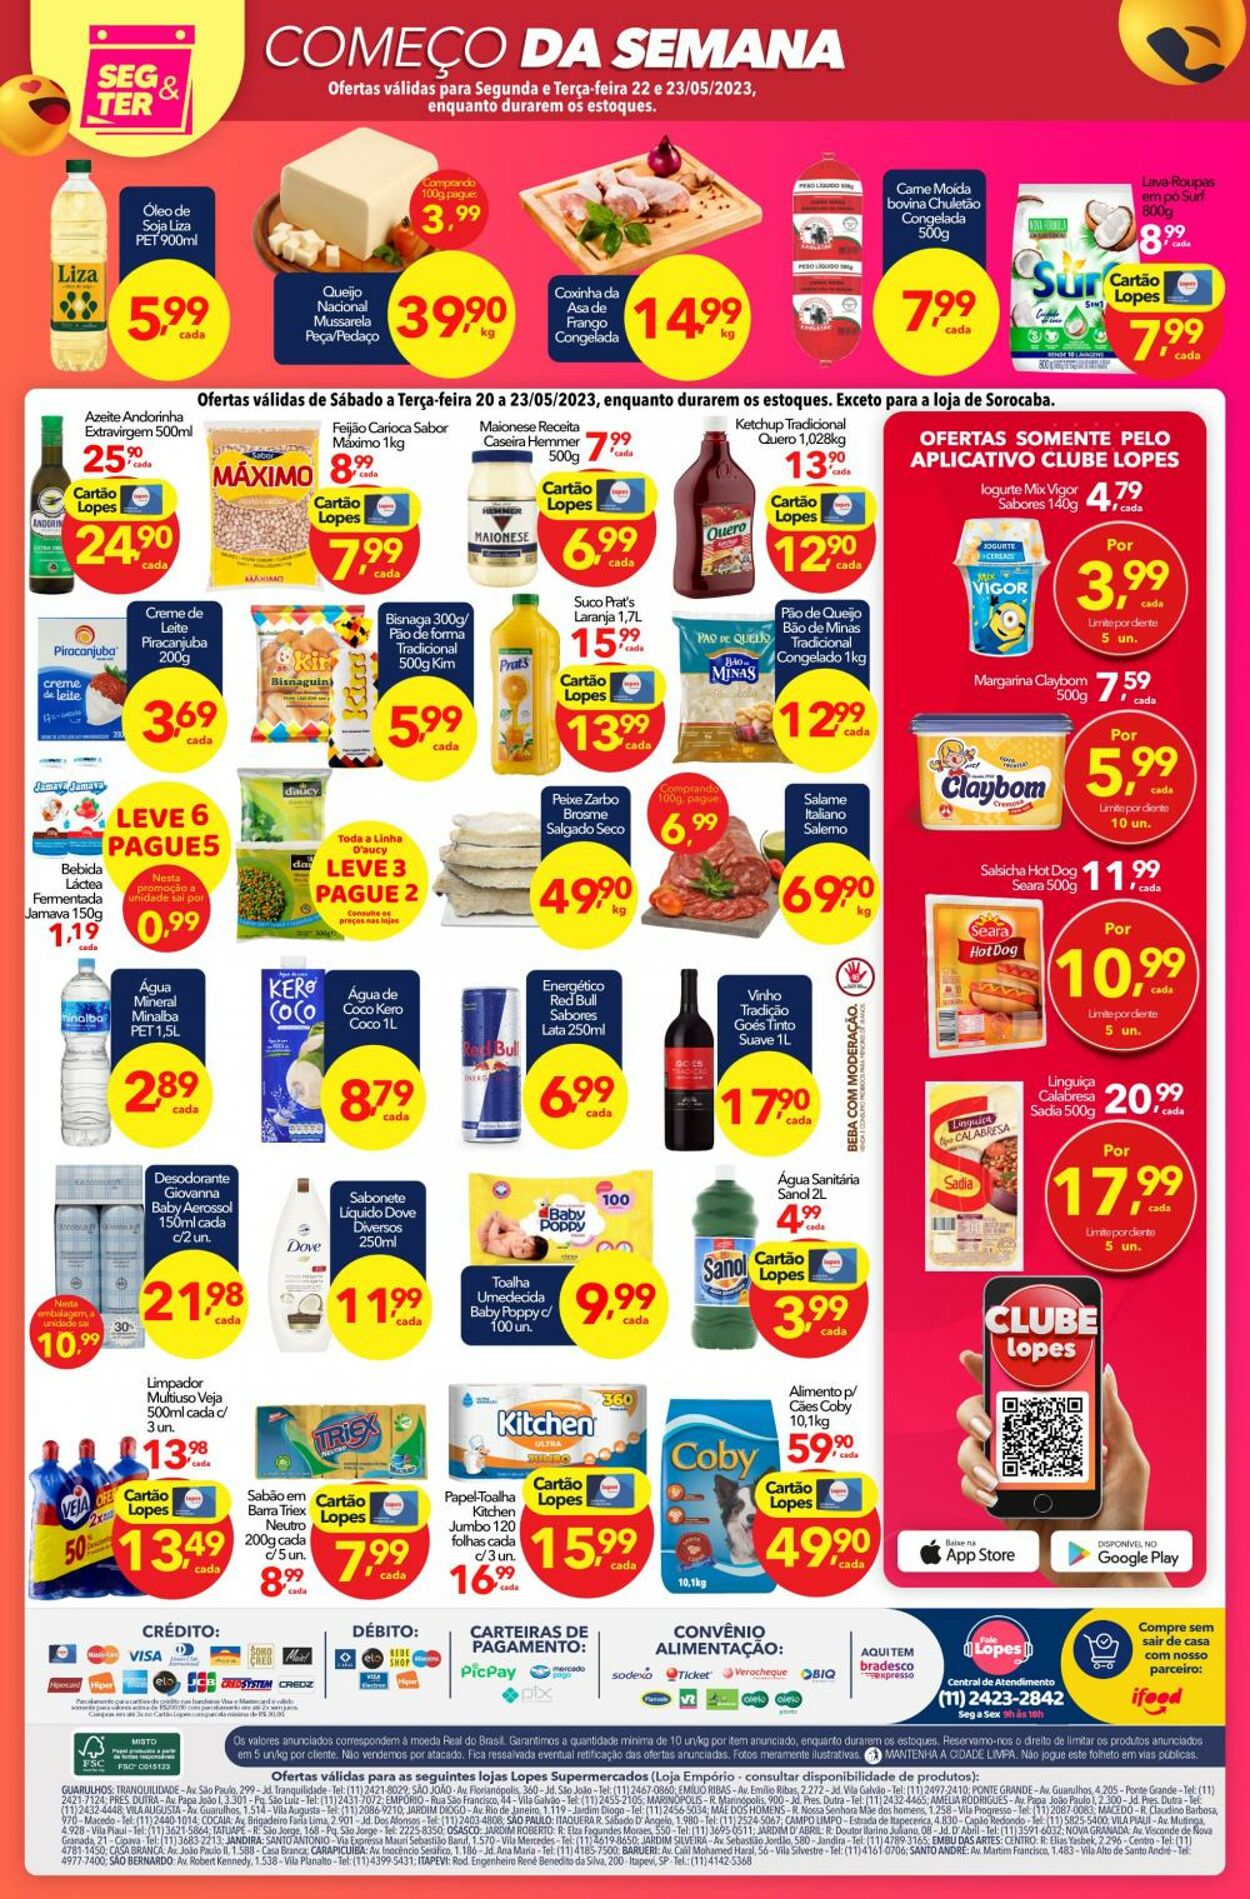 Folheto Lopes Supermercados 20.05.2023 - 23.05.2023